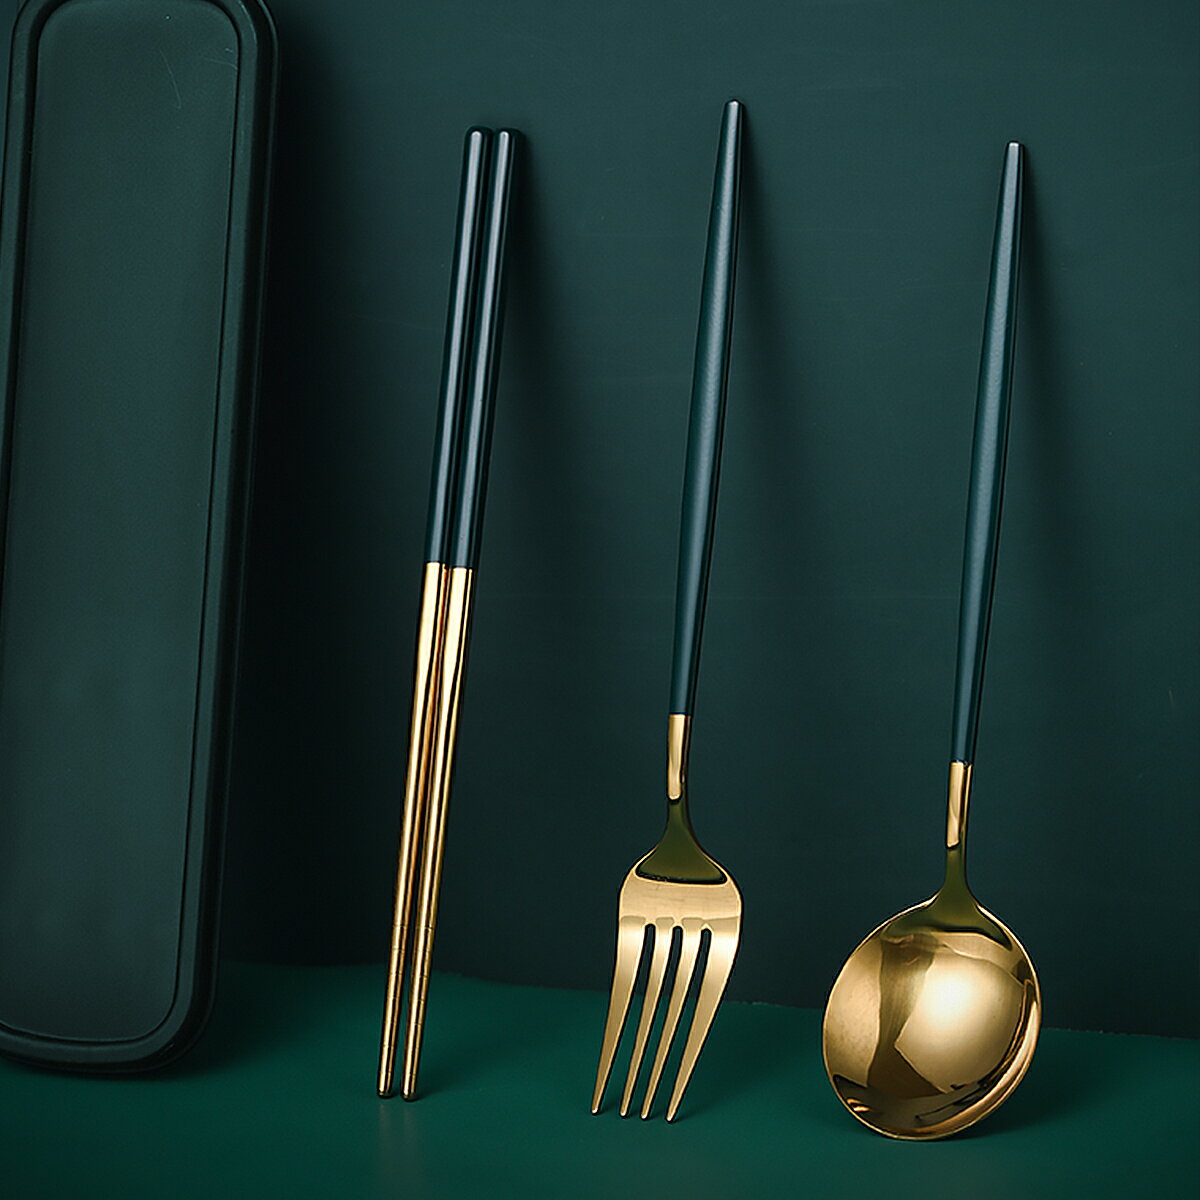 3件套不銹鋼勺子叉子筷子便攜餐具套裝網紅餐具便攜餐具